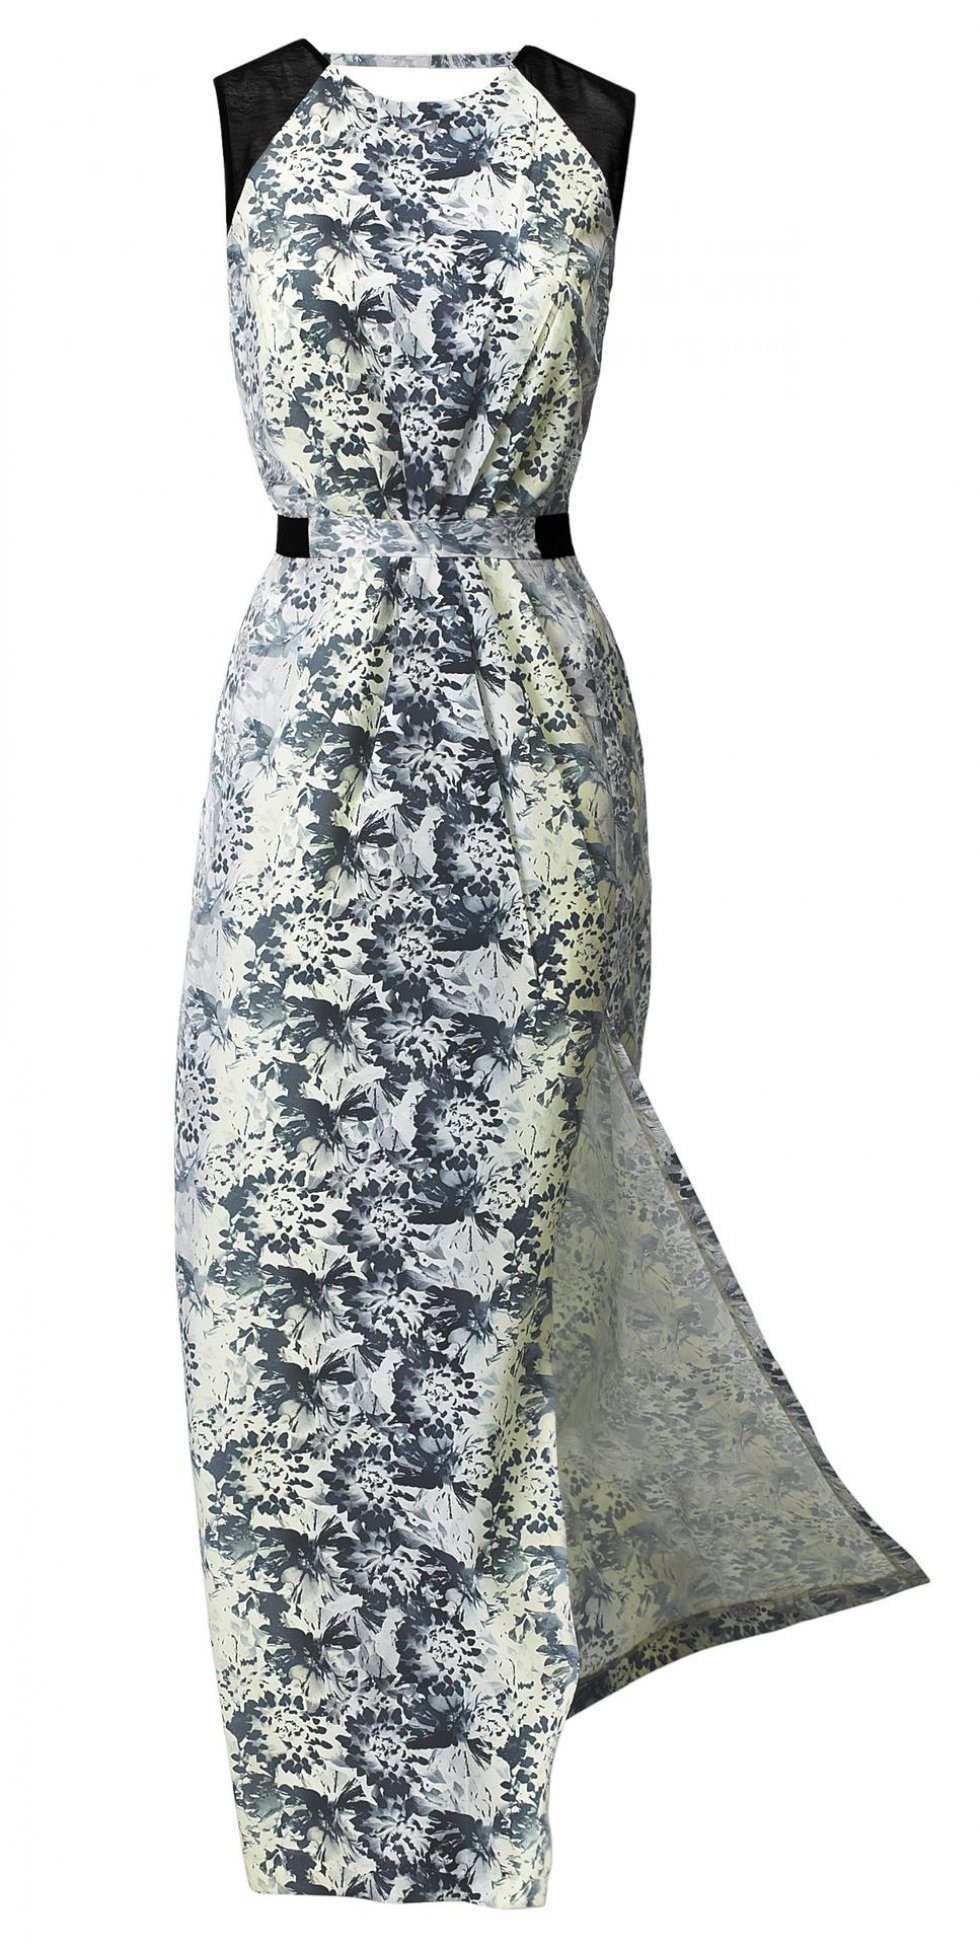 Gulvlang kjole med blomsterprint fra H&M - pressebillede - Inspiration 2012: Blomster